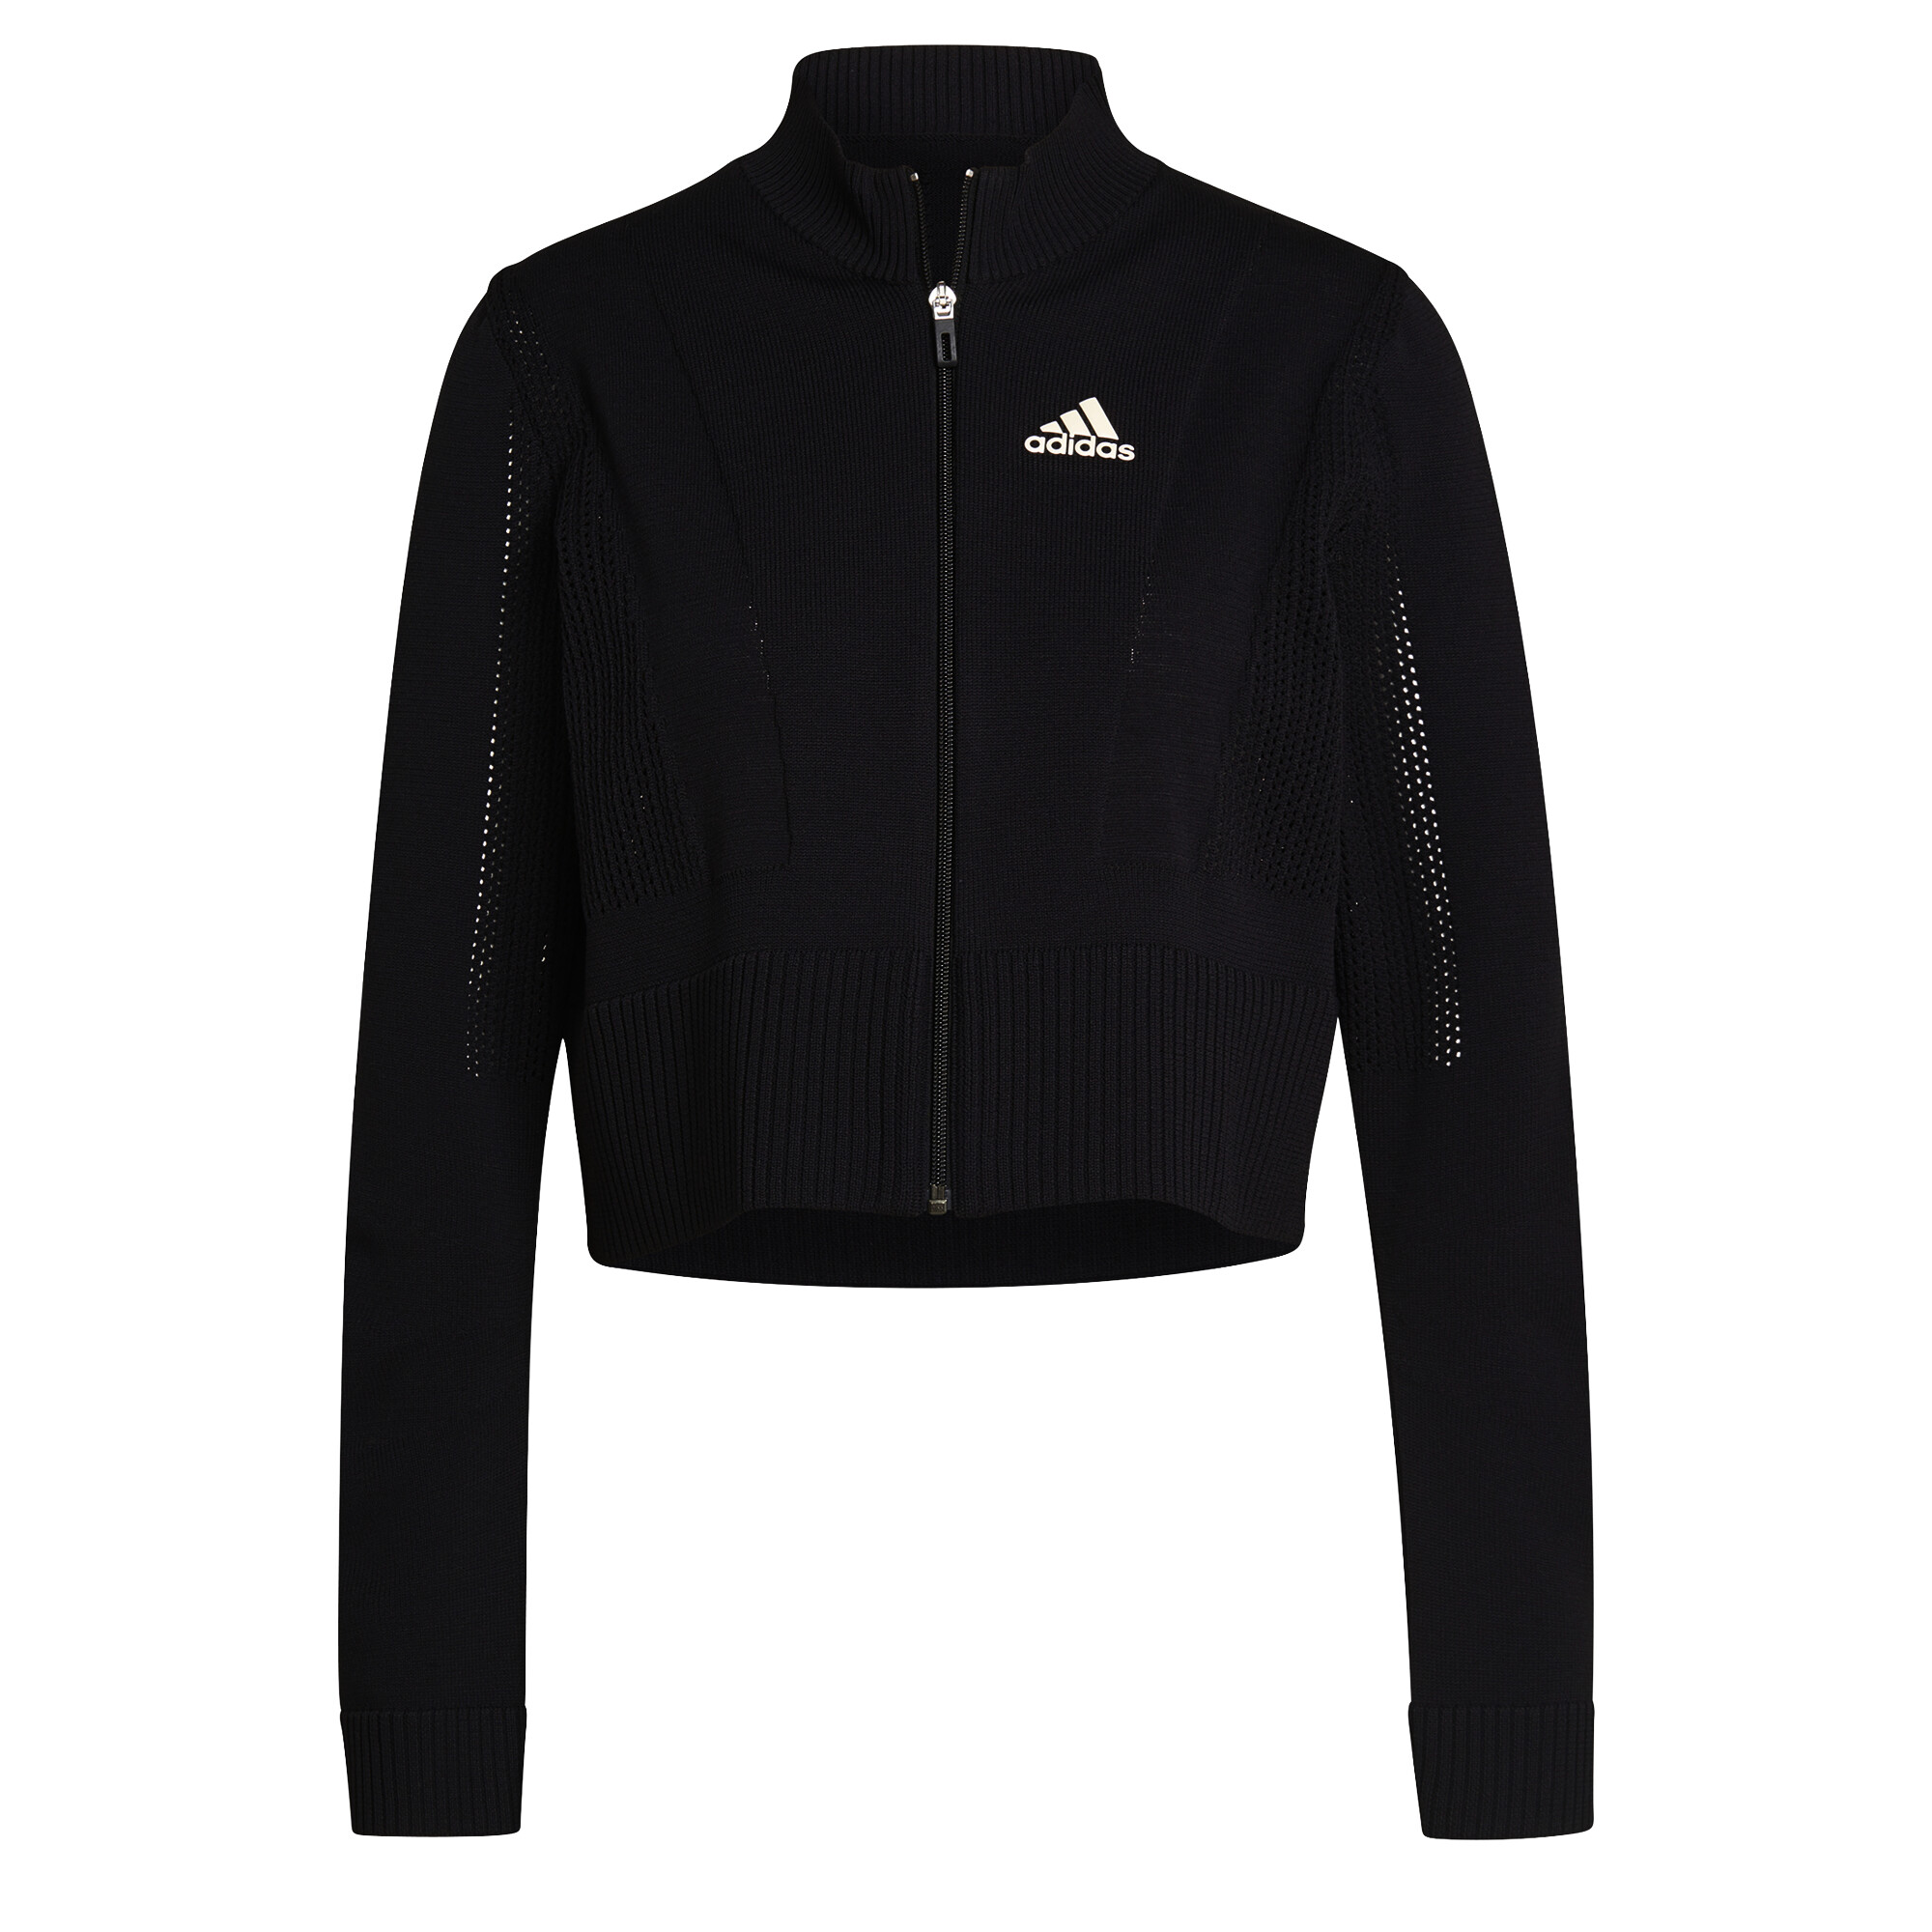 Adidas Tennis Primeknit Jacket Primeblue Aeroready fekete női sportdzseki